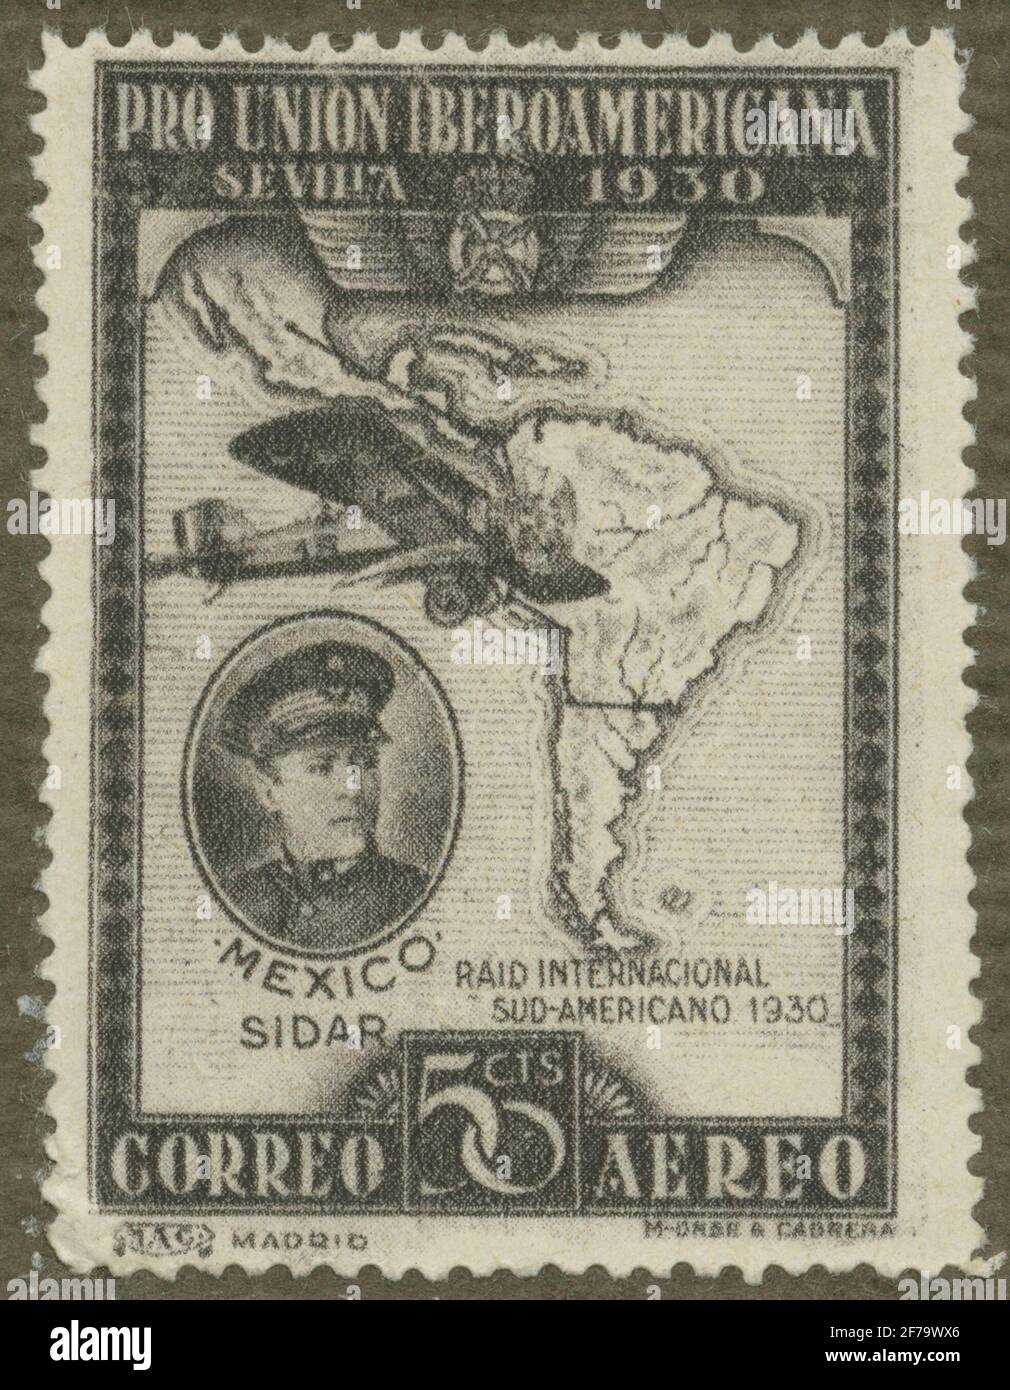 Timbro dell'Associazione Filatelista di Gösta Bodman, iniziato il 1950.il timbro dalla Spagna, 1930. Mappa del Sud America con Flying Mexico - SID. Monoplanare. 'La mostra a Siviglia nel 1930'. Foto Stock